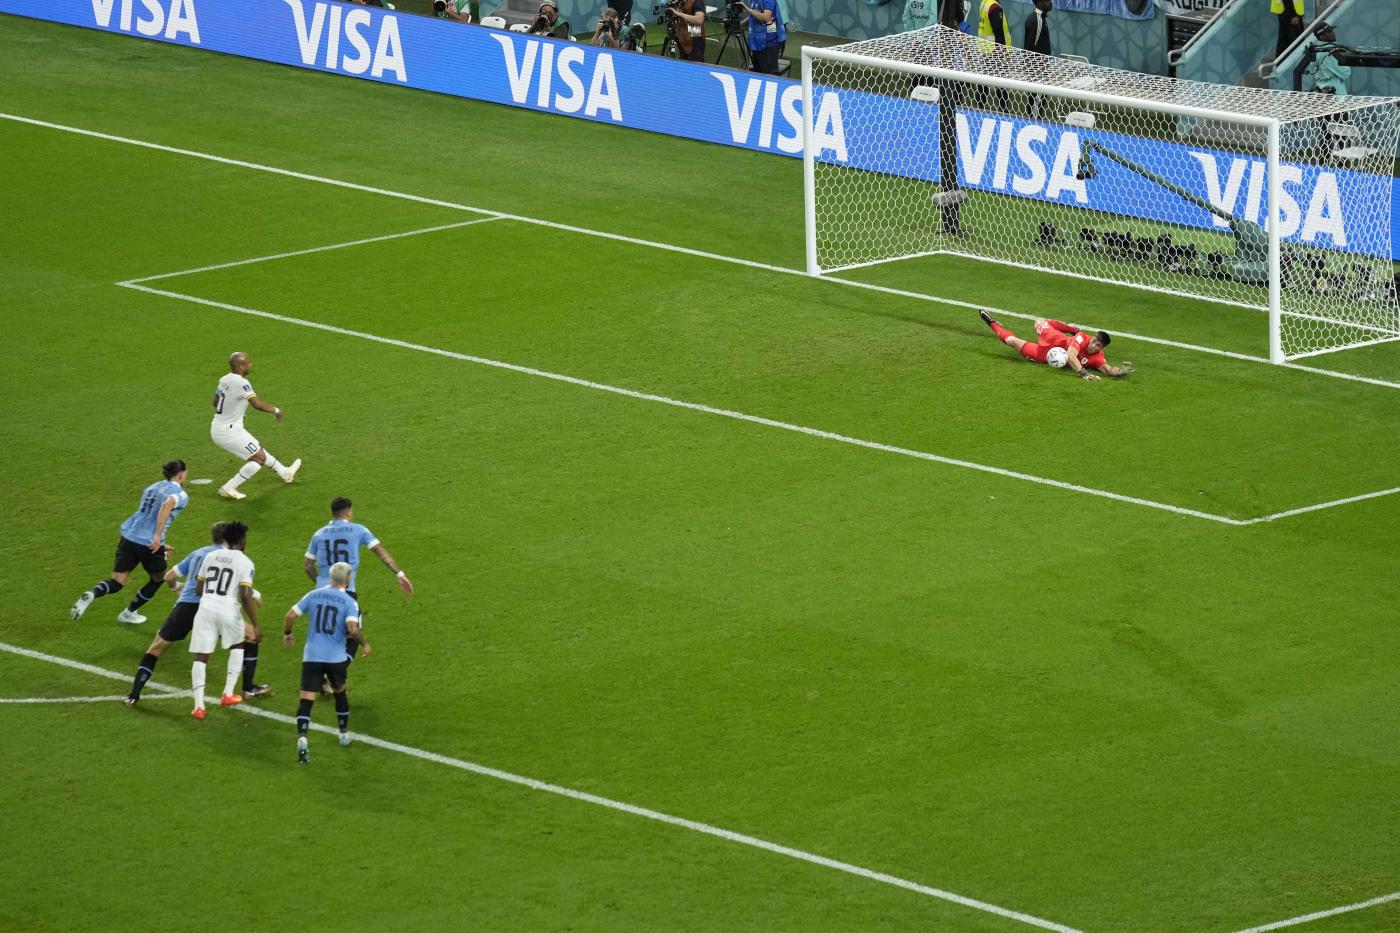 Calcio, Mondiali 2022: maledizione dei rigori contro l’Uruguay. Il Ghana la prima nazione dopo oltre cinquant’anni a sbagliarne due